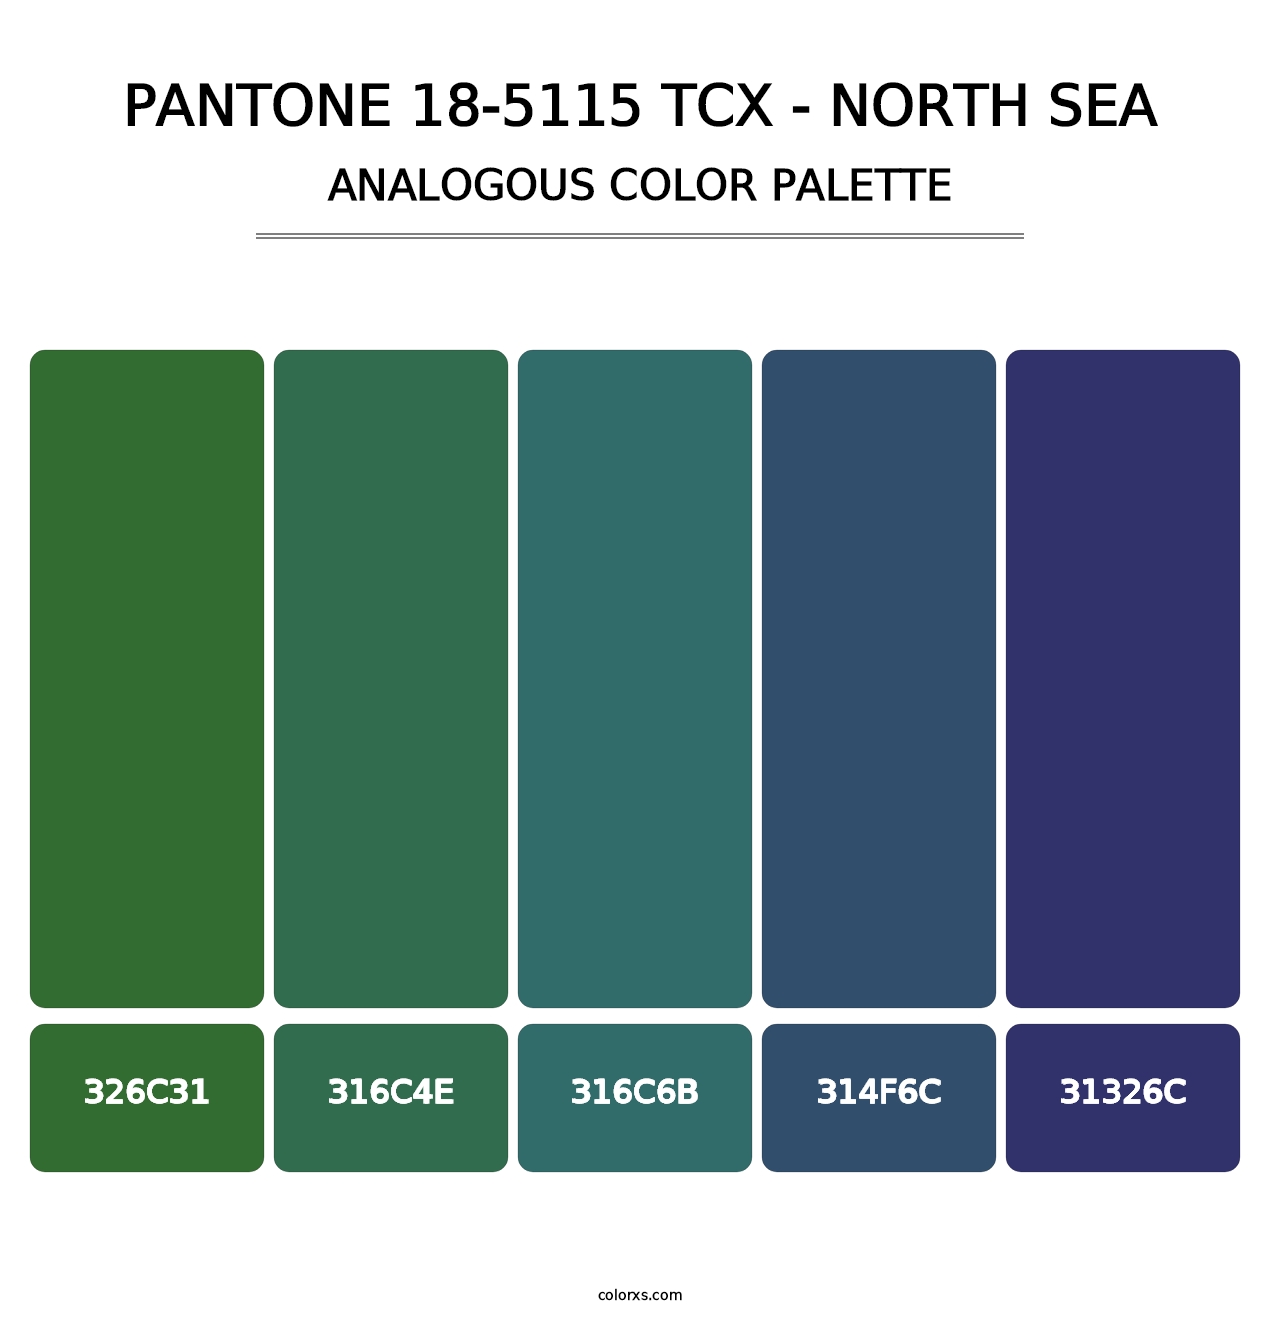 PANTONE 18-5115 TCX - North Sea - Analogous Color Palette